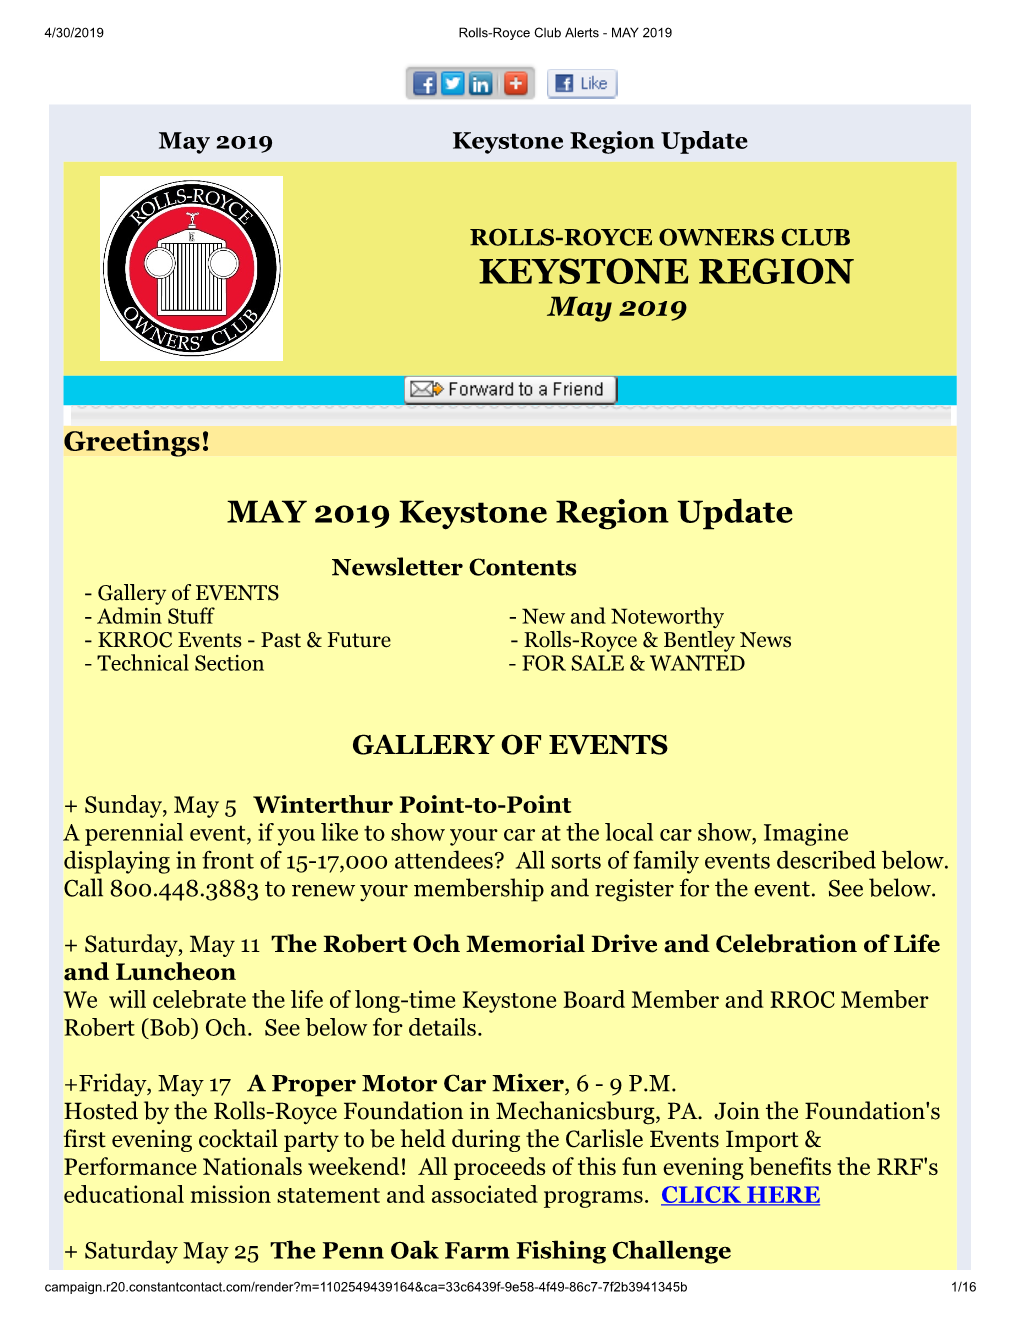 Keystone Region Update